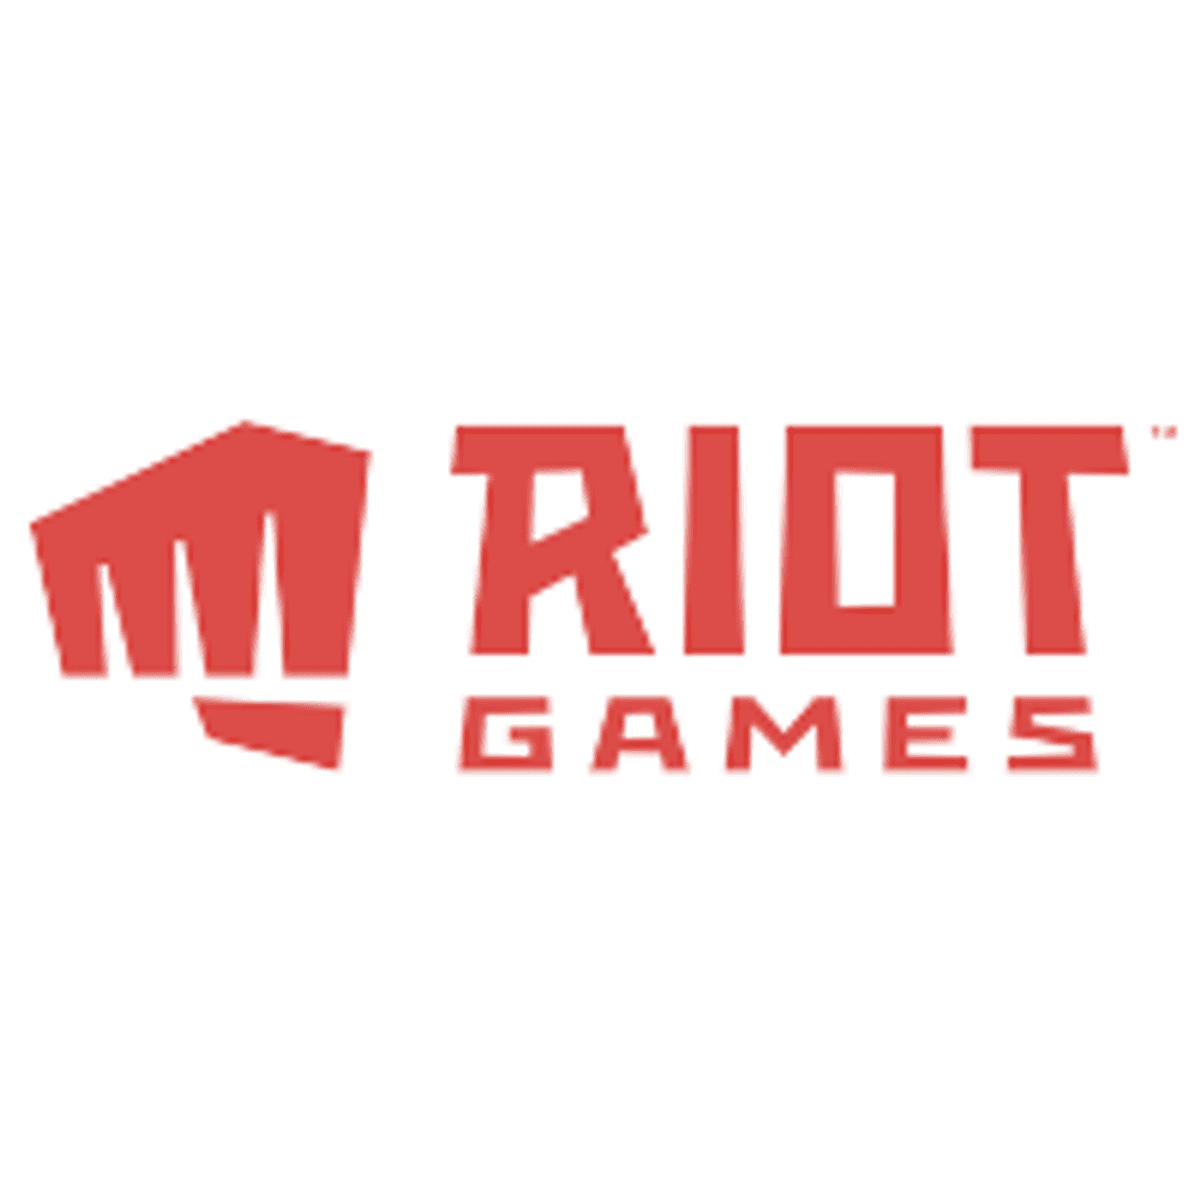 Gameontwikkelaar Riot Games schikt in rechtszaak over discriminatie image